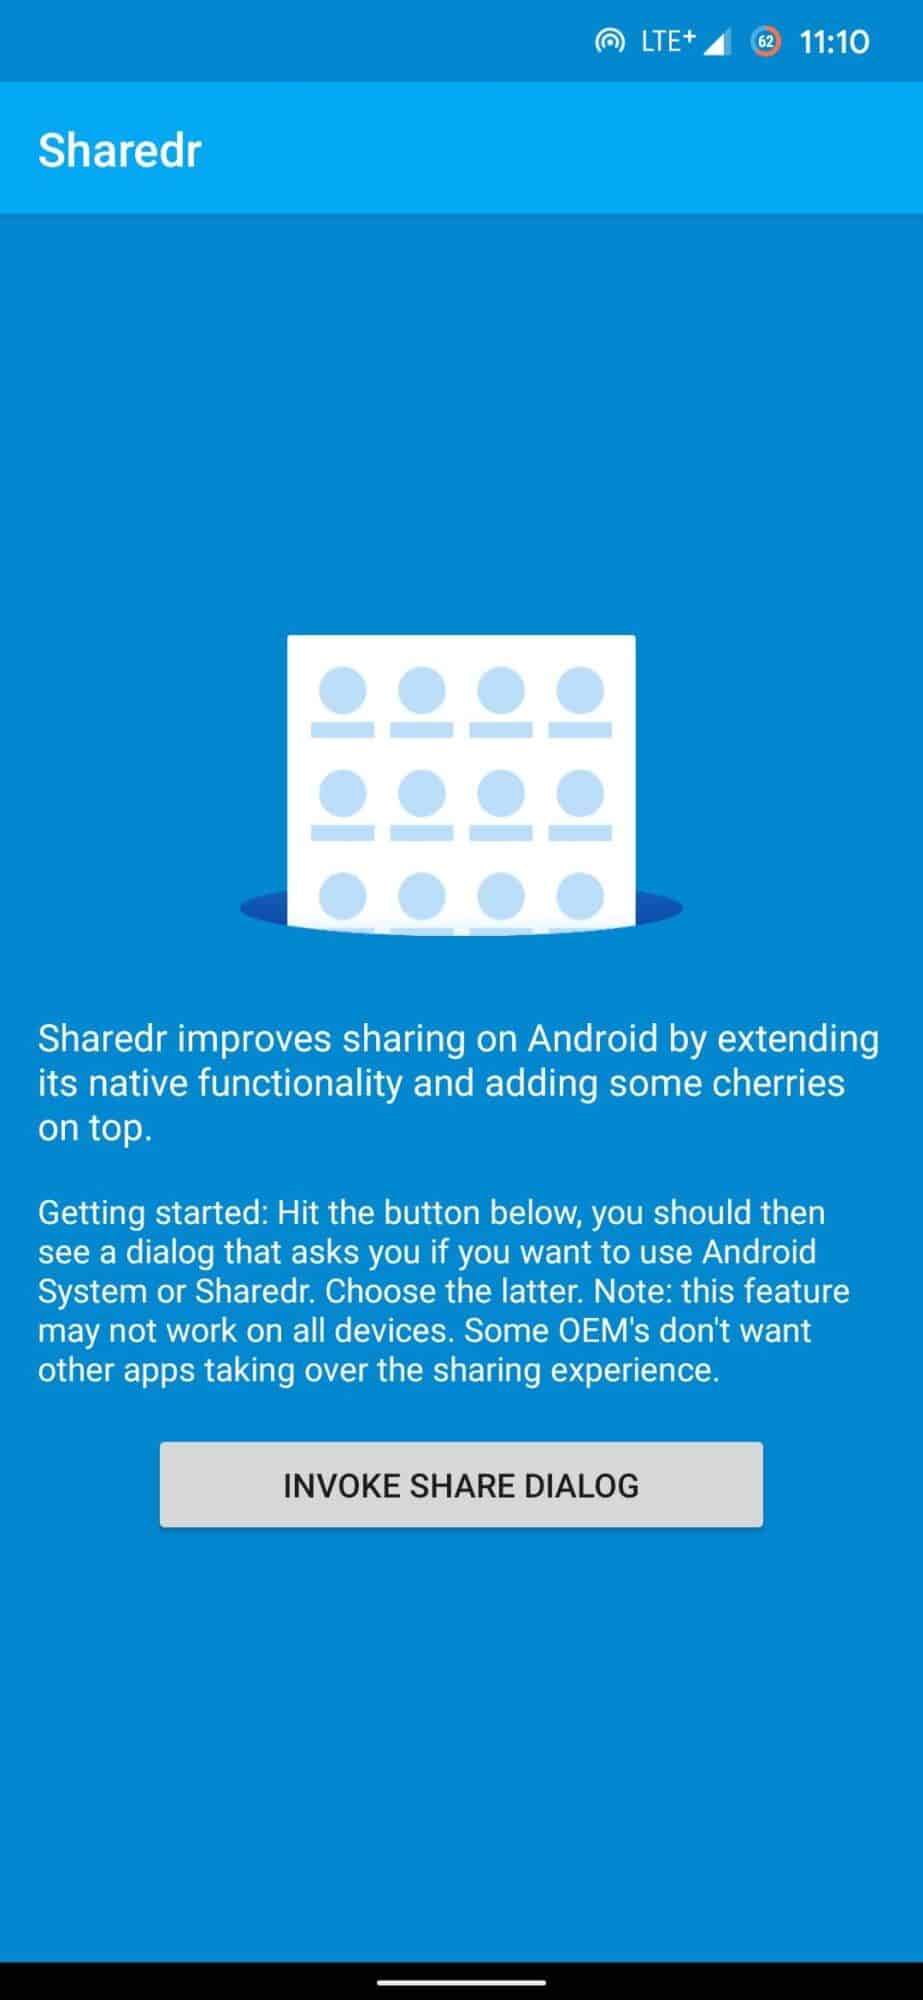 menu partager, Comment customiser le menu Partager de votre smartphone ?